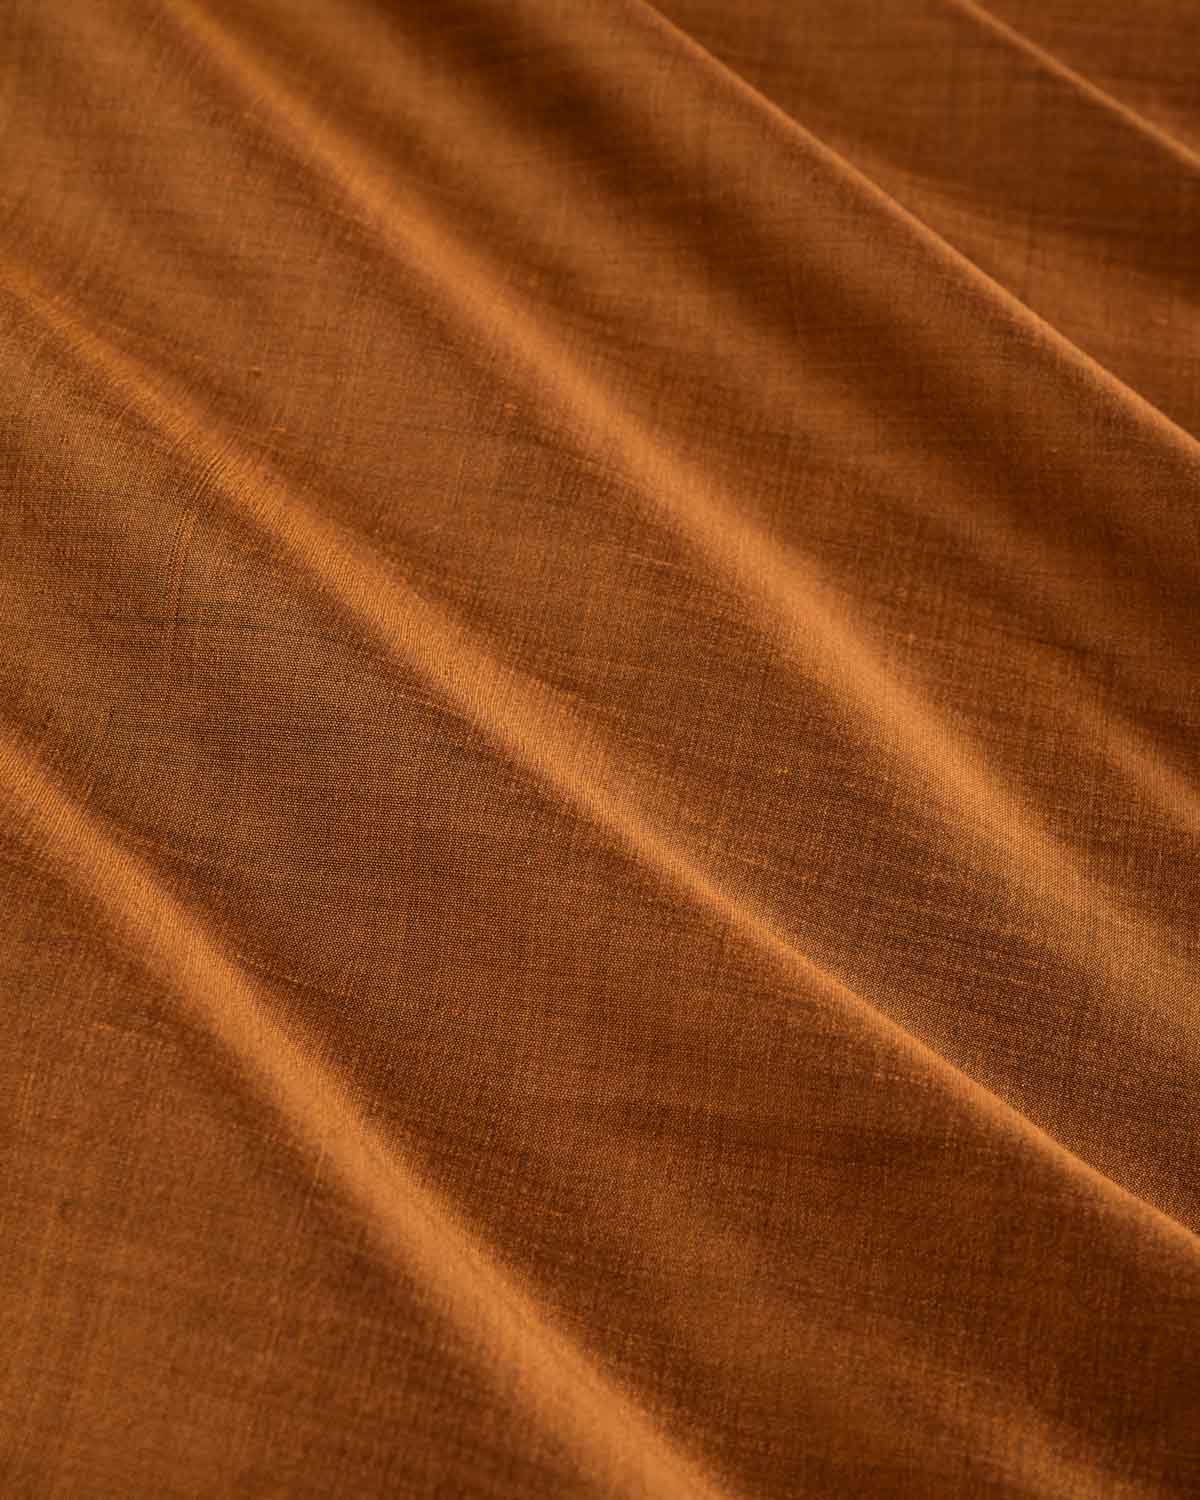 Russet Brown Banarasi Plain Woven Spun Silk Unisex Fabric-HolyWeaves